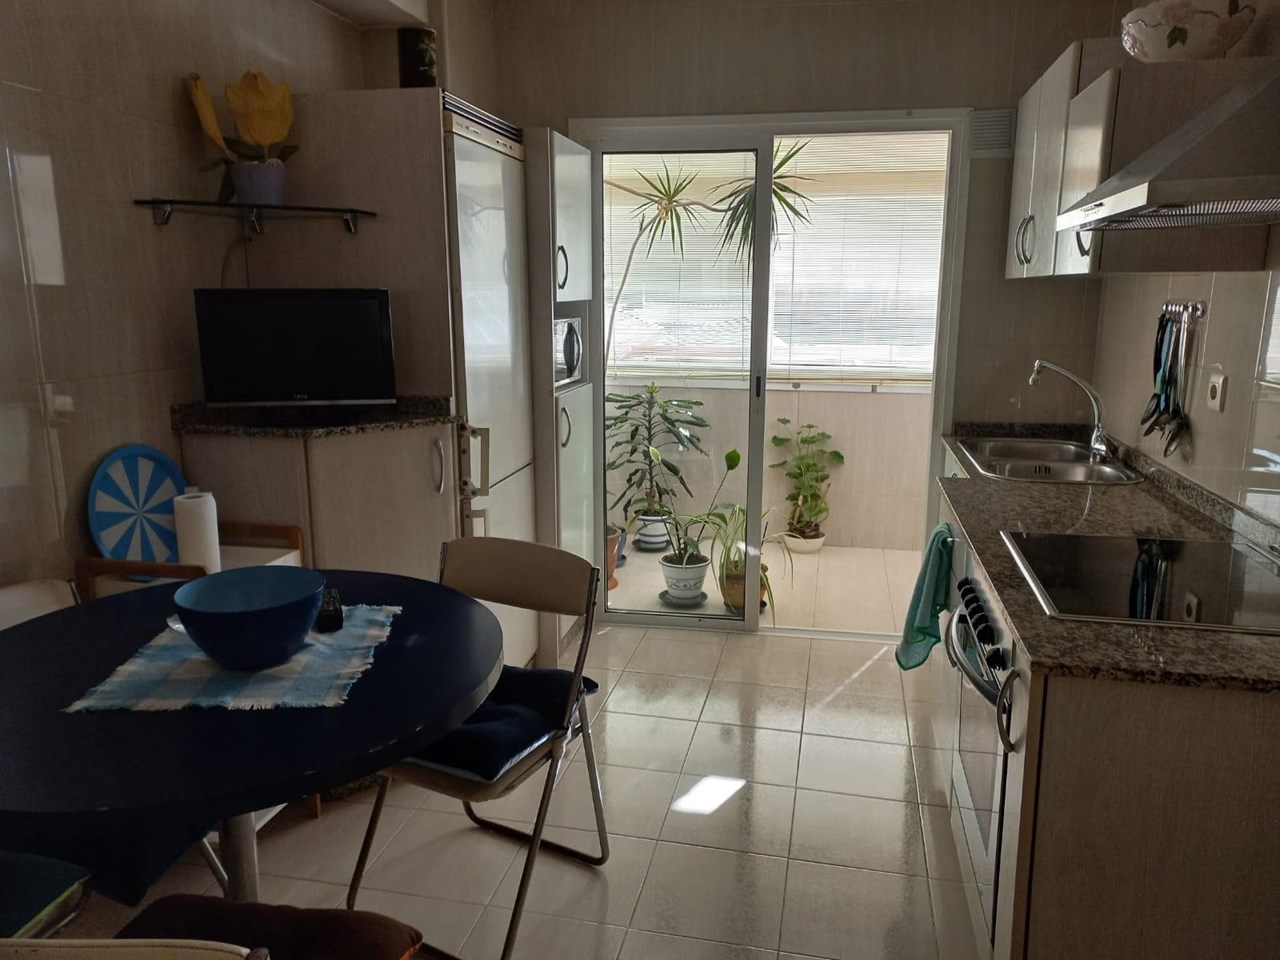 Foto 2 Coruña, 4 dormitorios + 1 dormitorio, despacho, 2 baños + aseo